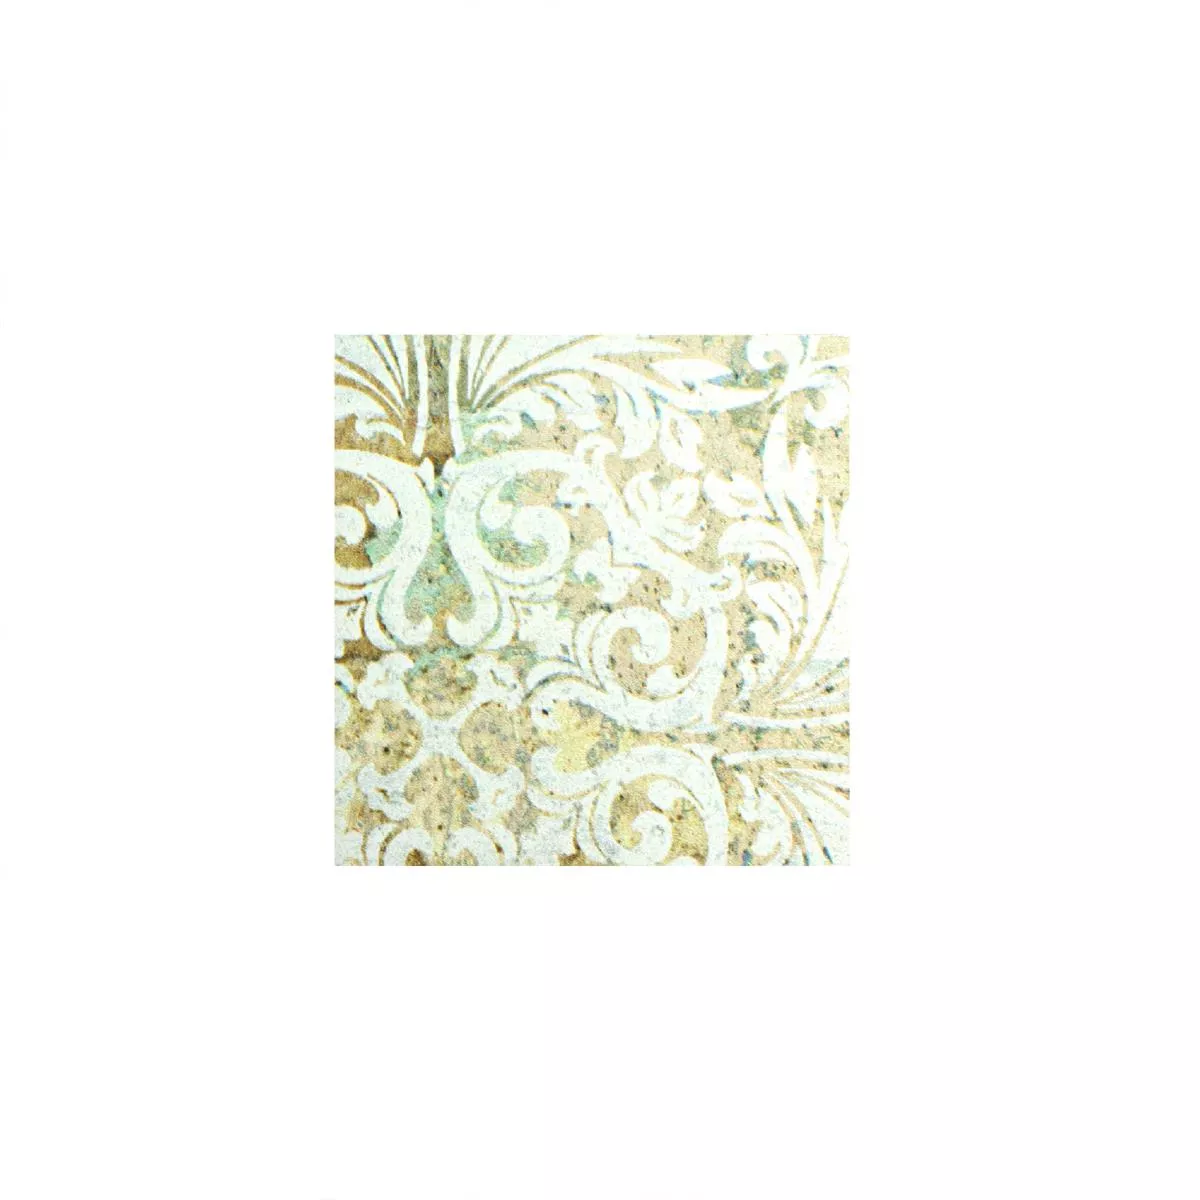 Próbka Mozaika Ceramiczna Płytki Bellona Efekt Jasne Kolory